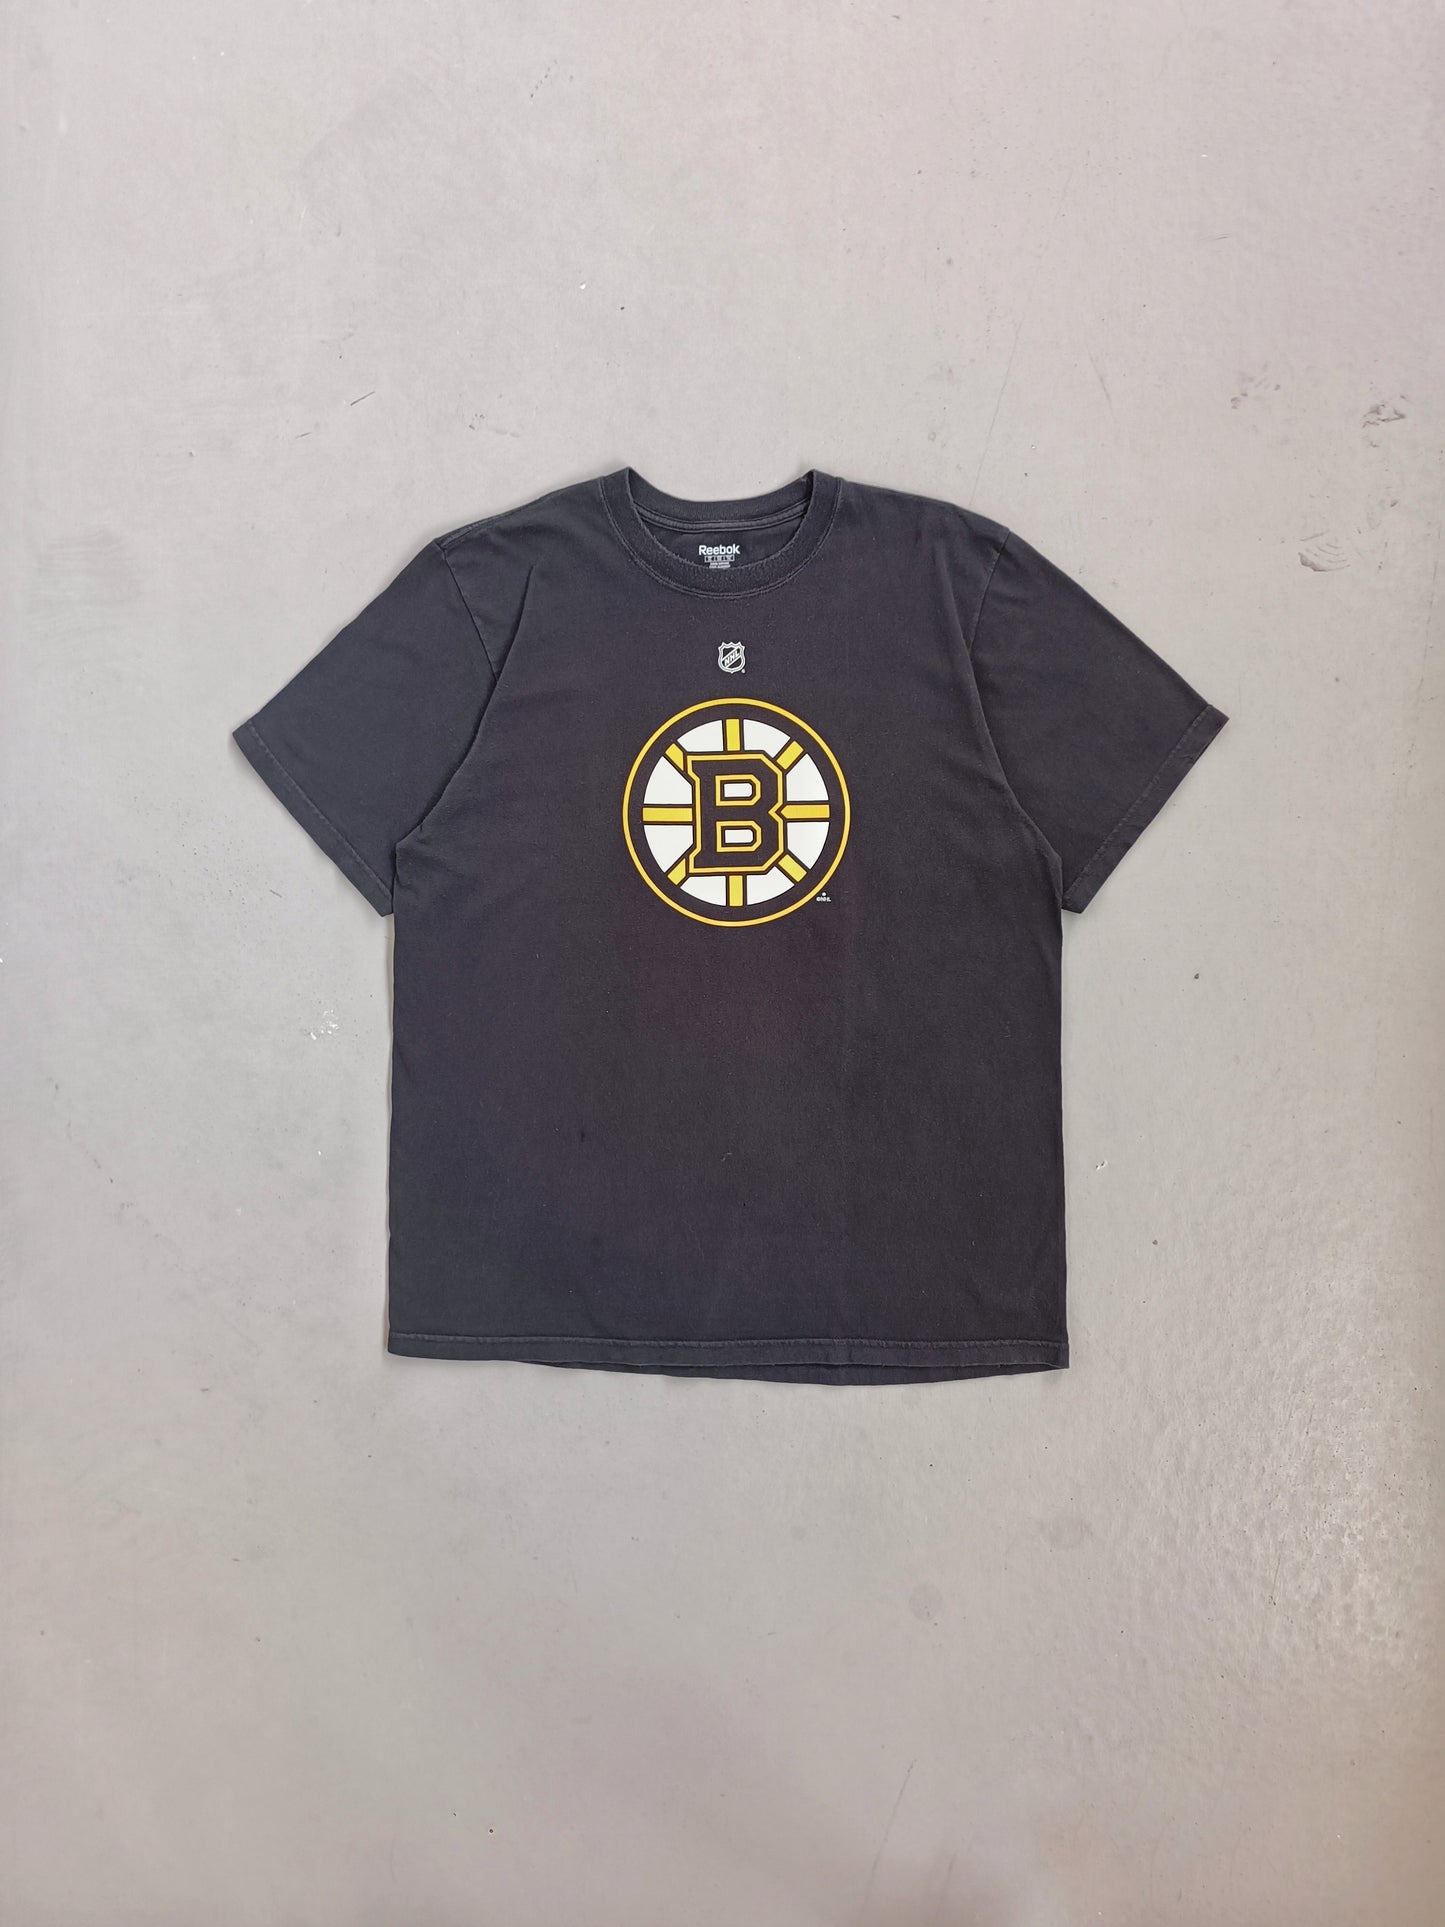 Boston Bruins - L